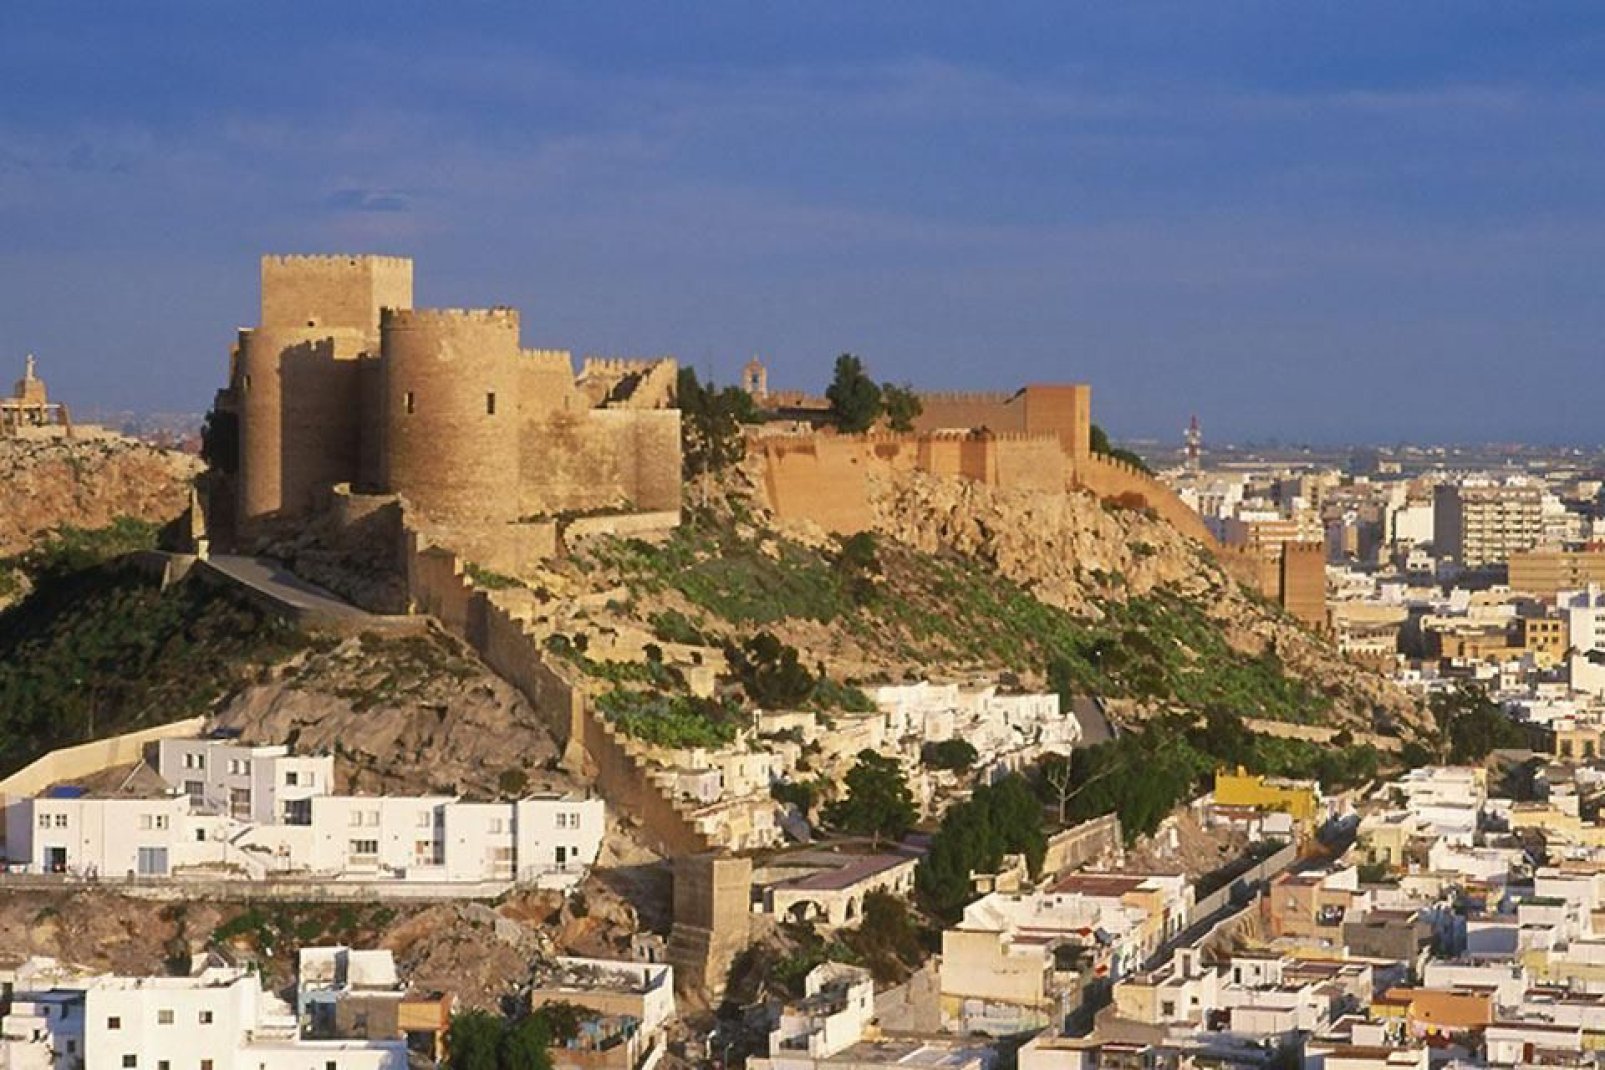 Questa fortezza risalente al XIII secolo è la più grande dell'Andalusia. Vale la pena visitare le sue mura imponenti e i magnifici giardini.